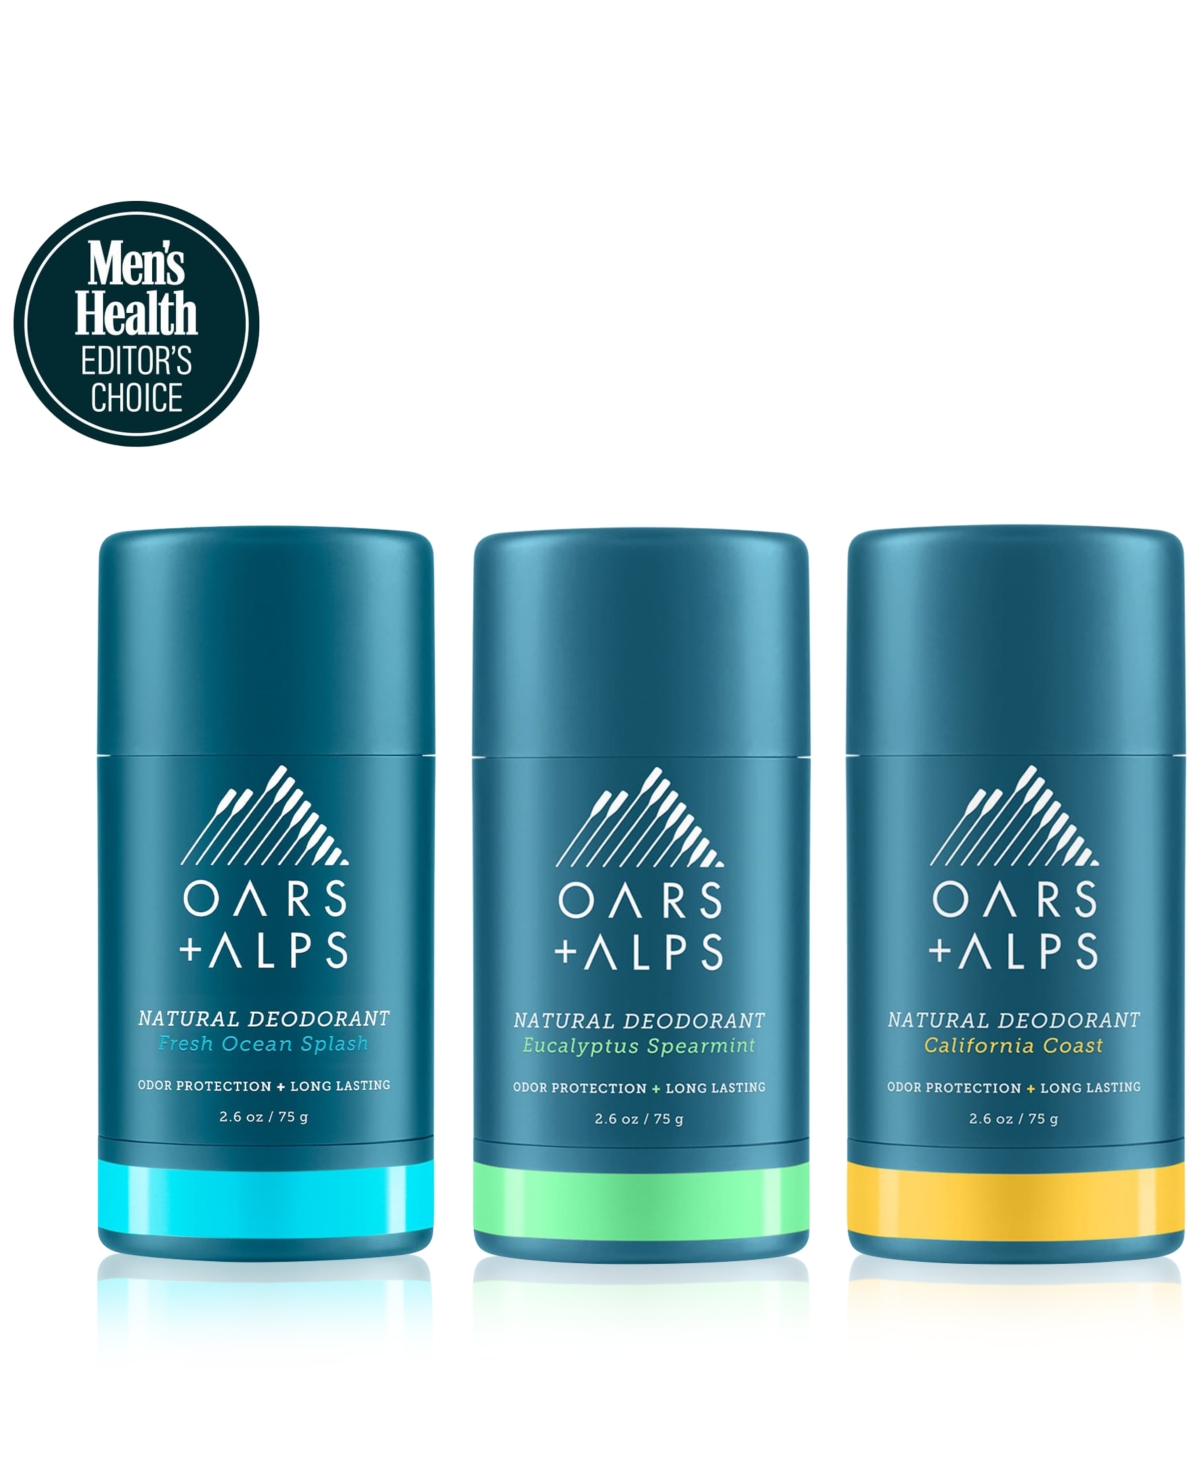 Oars + Alps 3-pc. Aluminum Free Deodorant Set